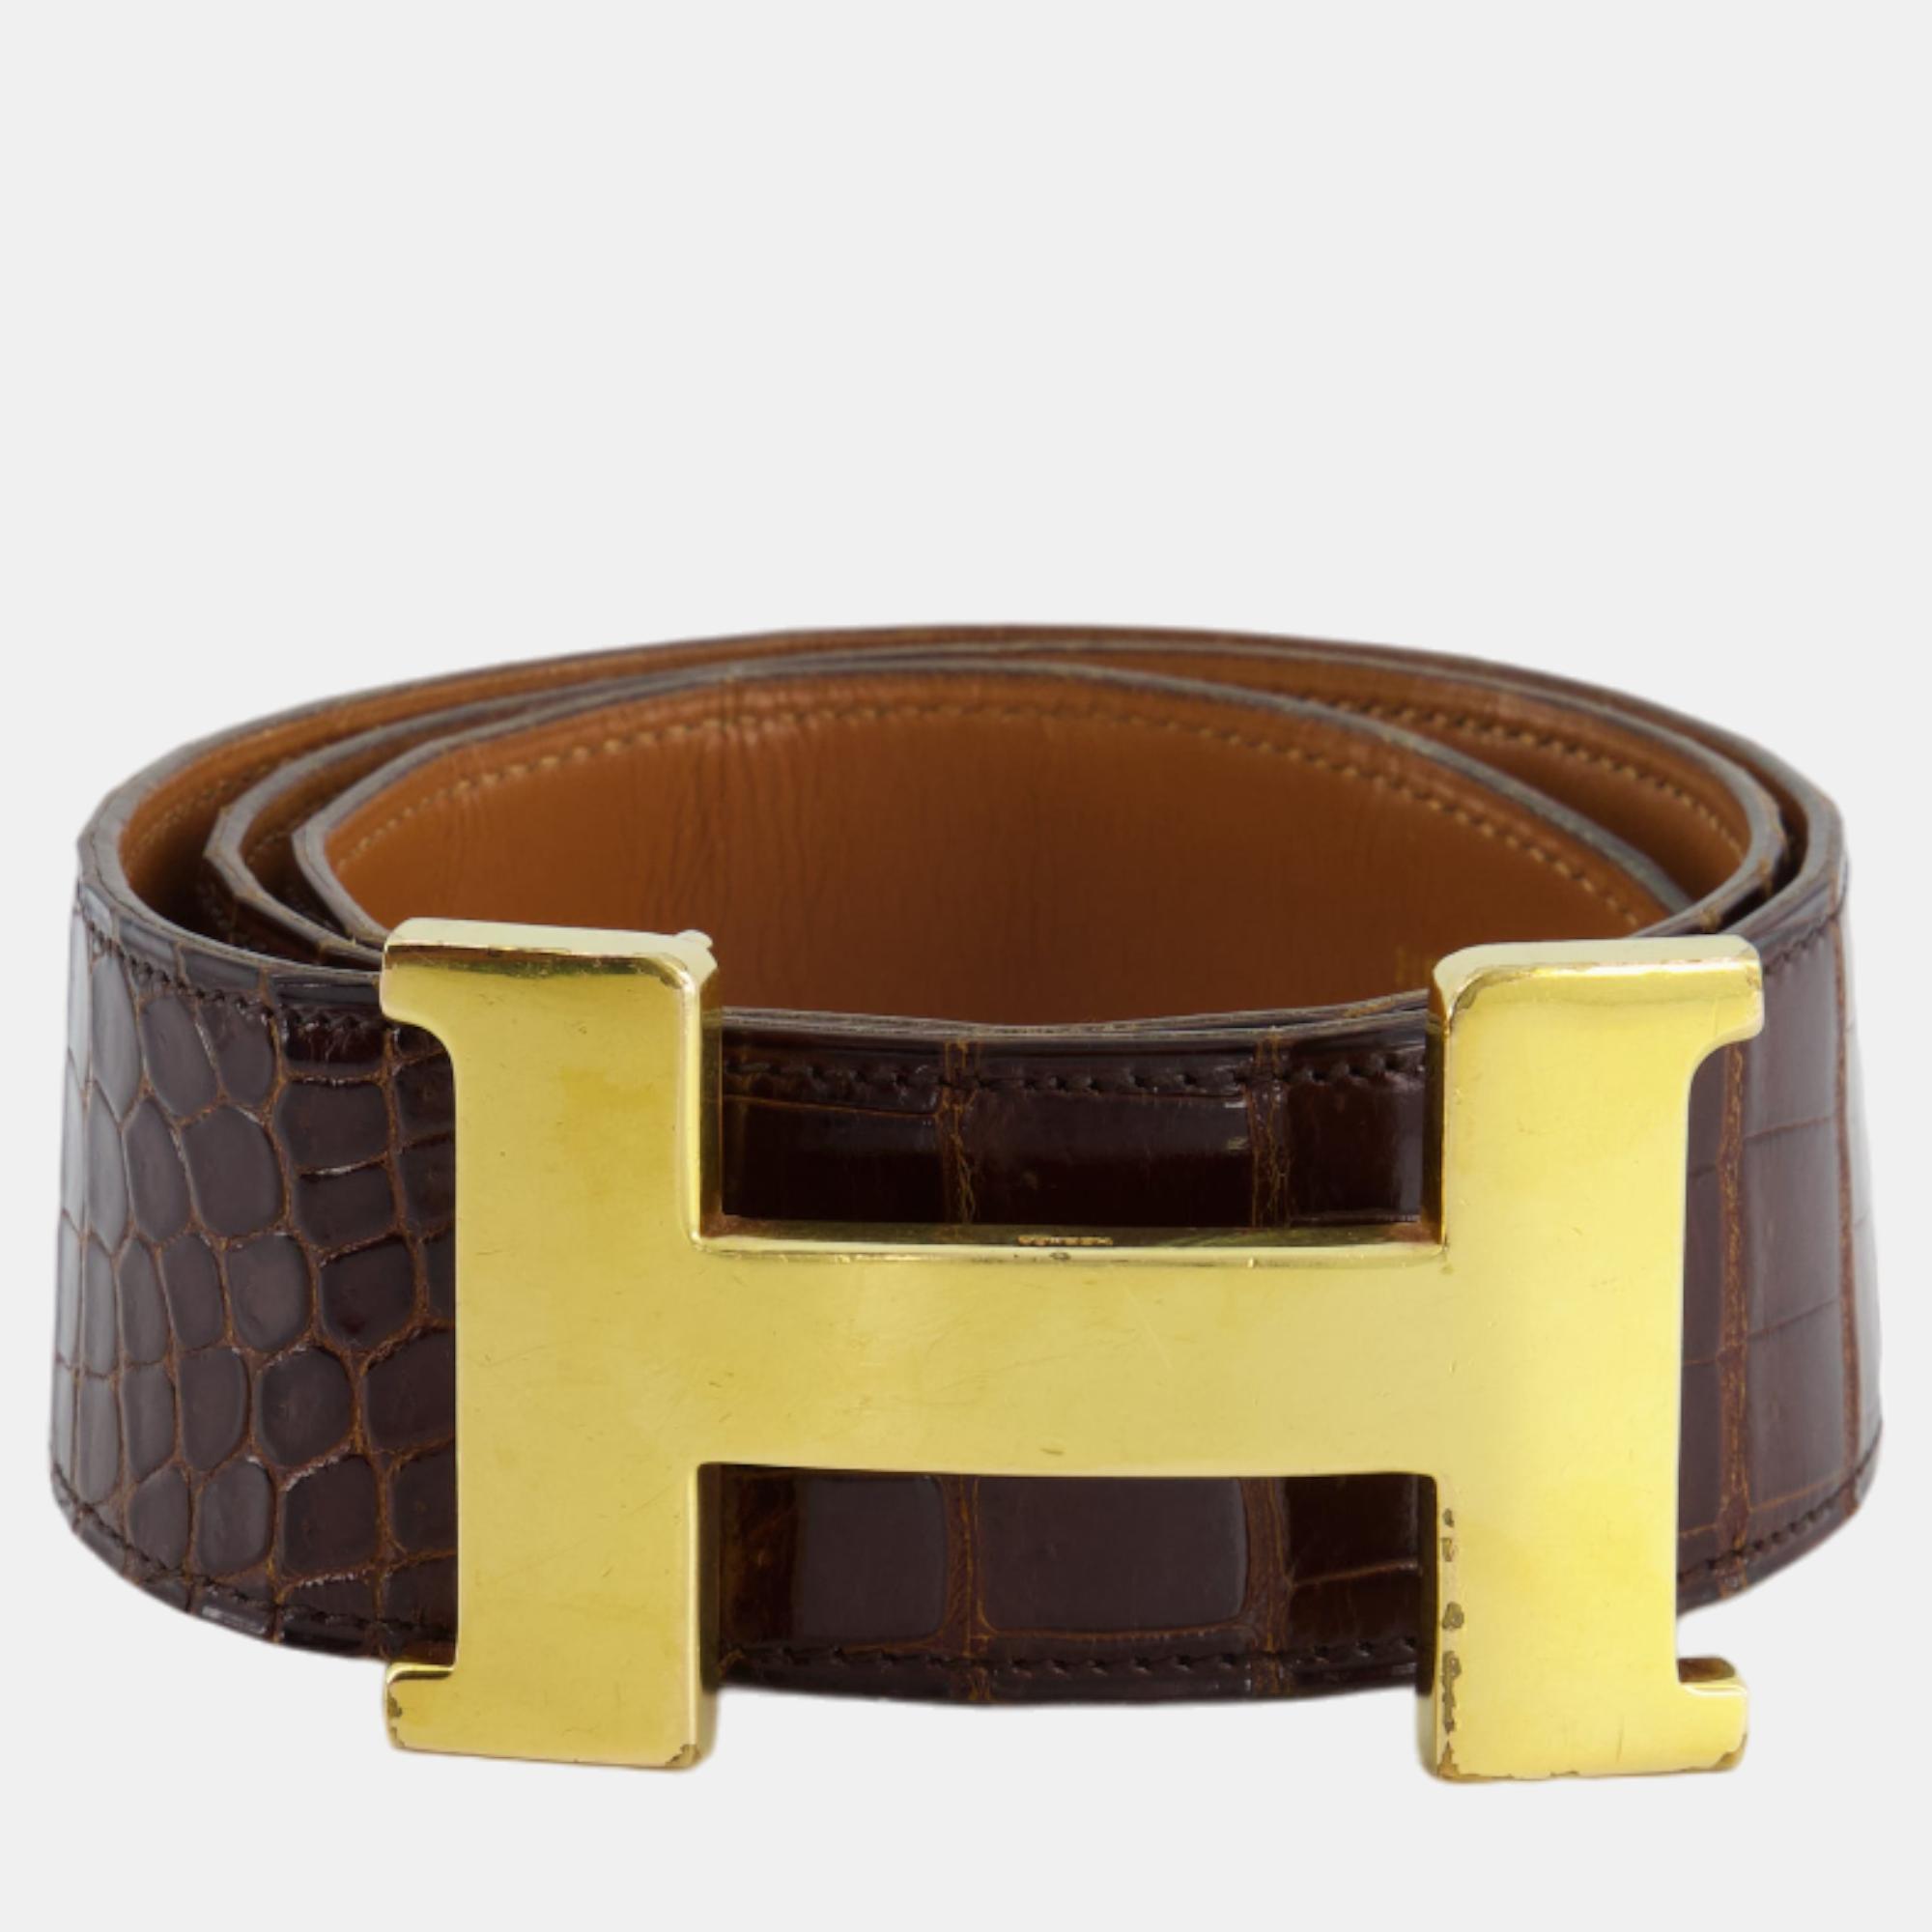 Hermes Vintage Brown Croc Belt With Gold H Buckle Size 80